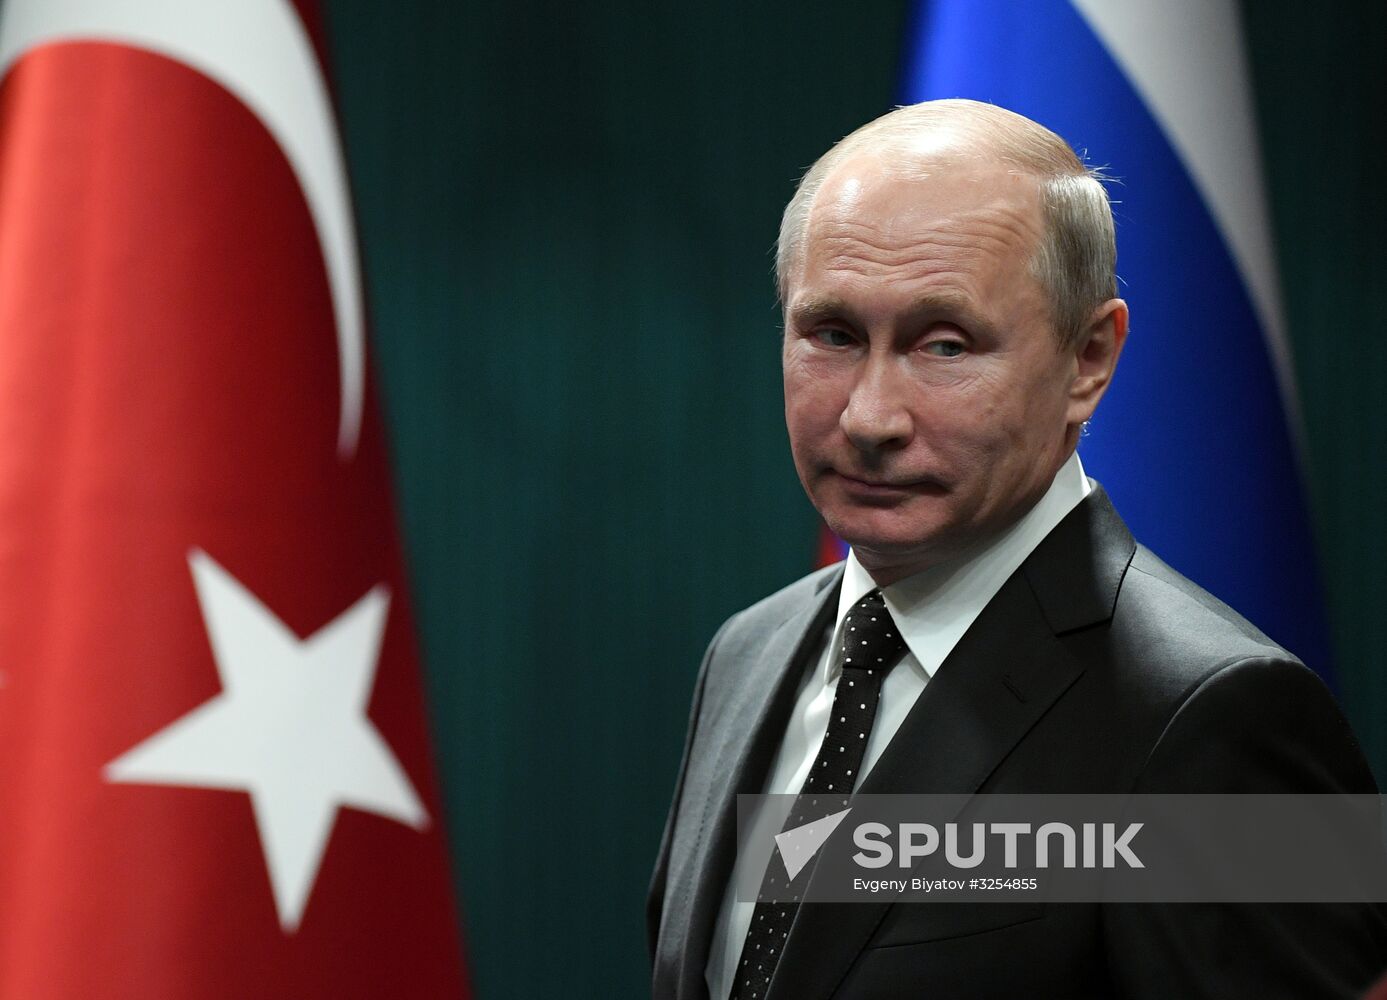 Vladimir Putin pays working visit to Turkey